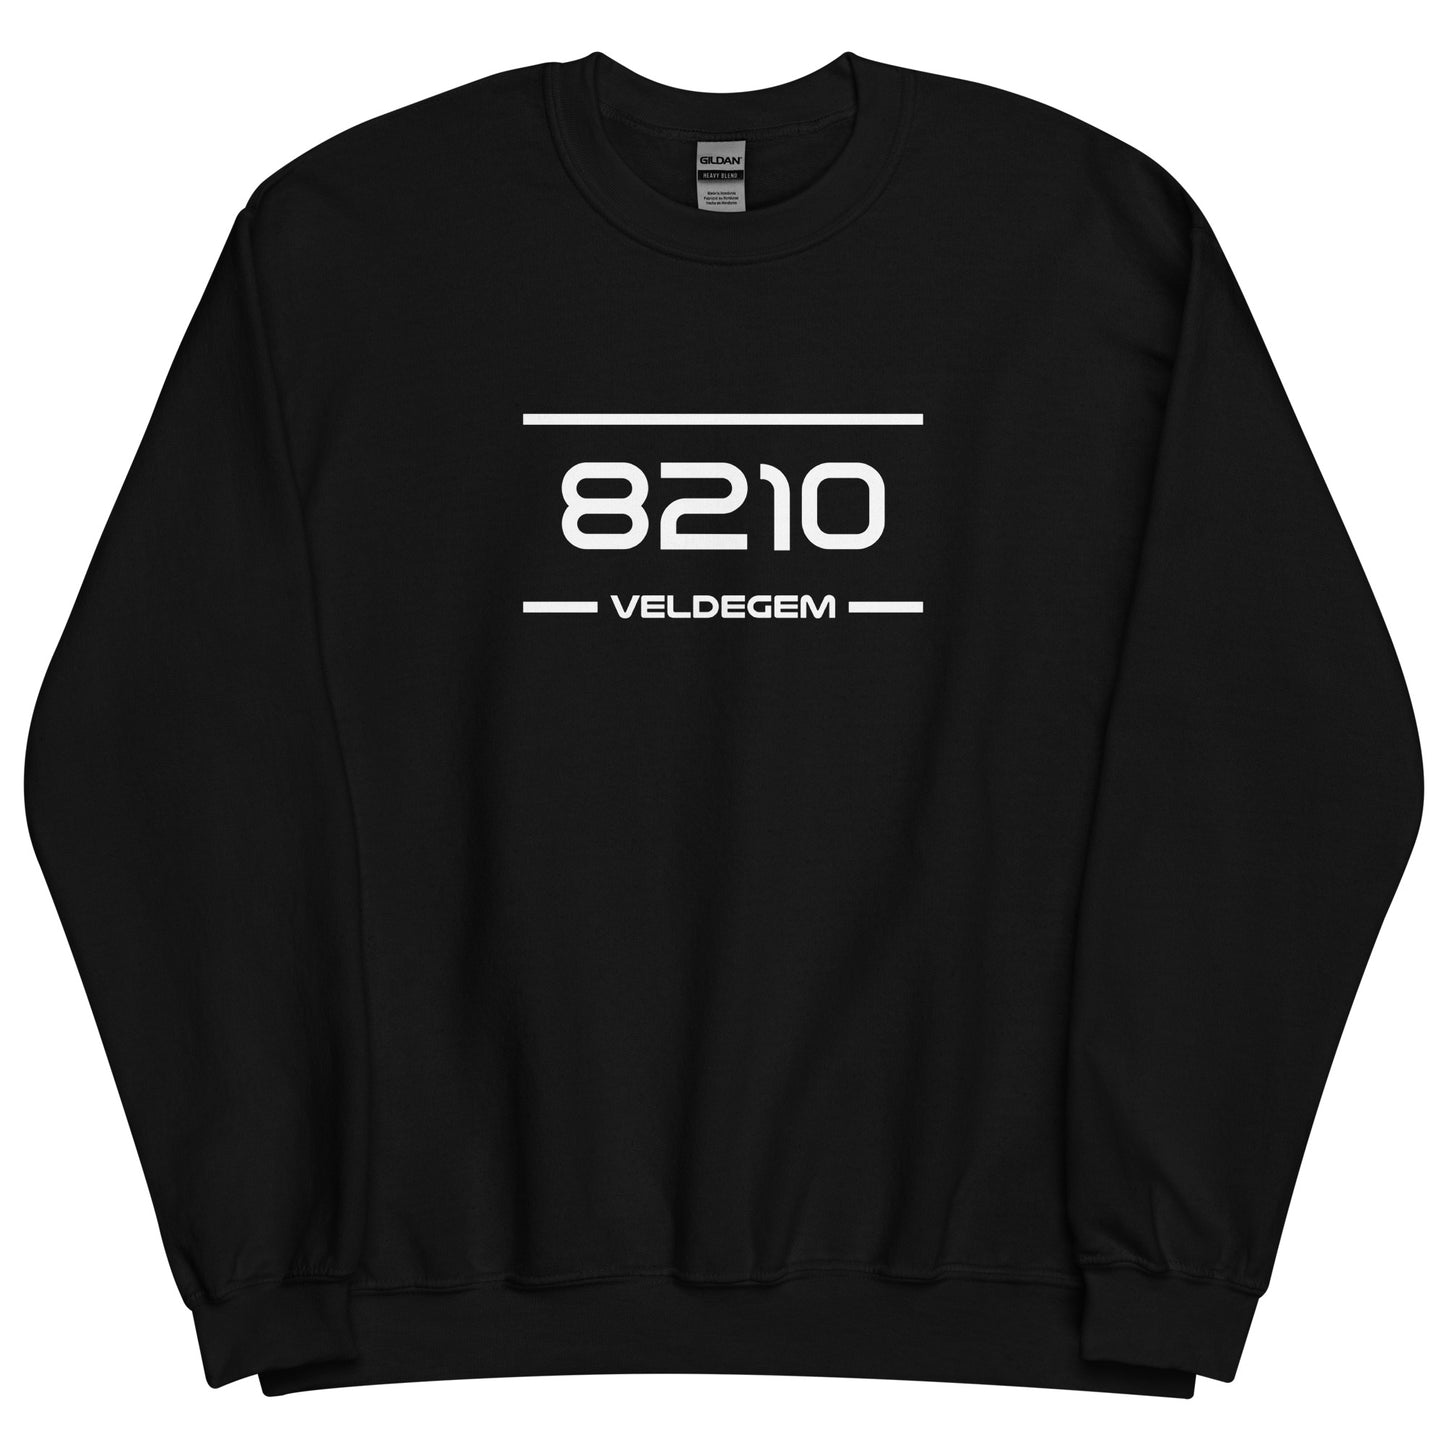 Sweater - 8210 - Veldegem (M/V)